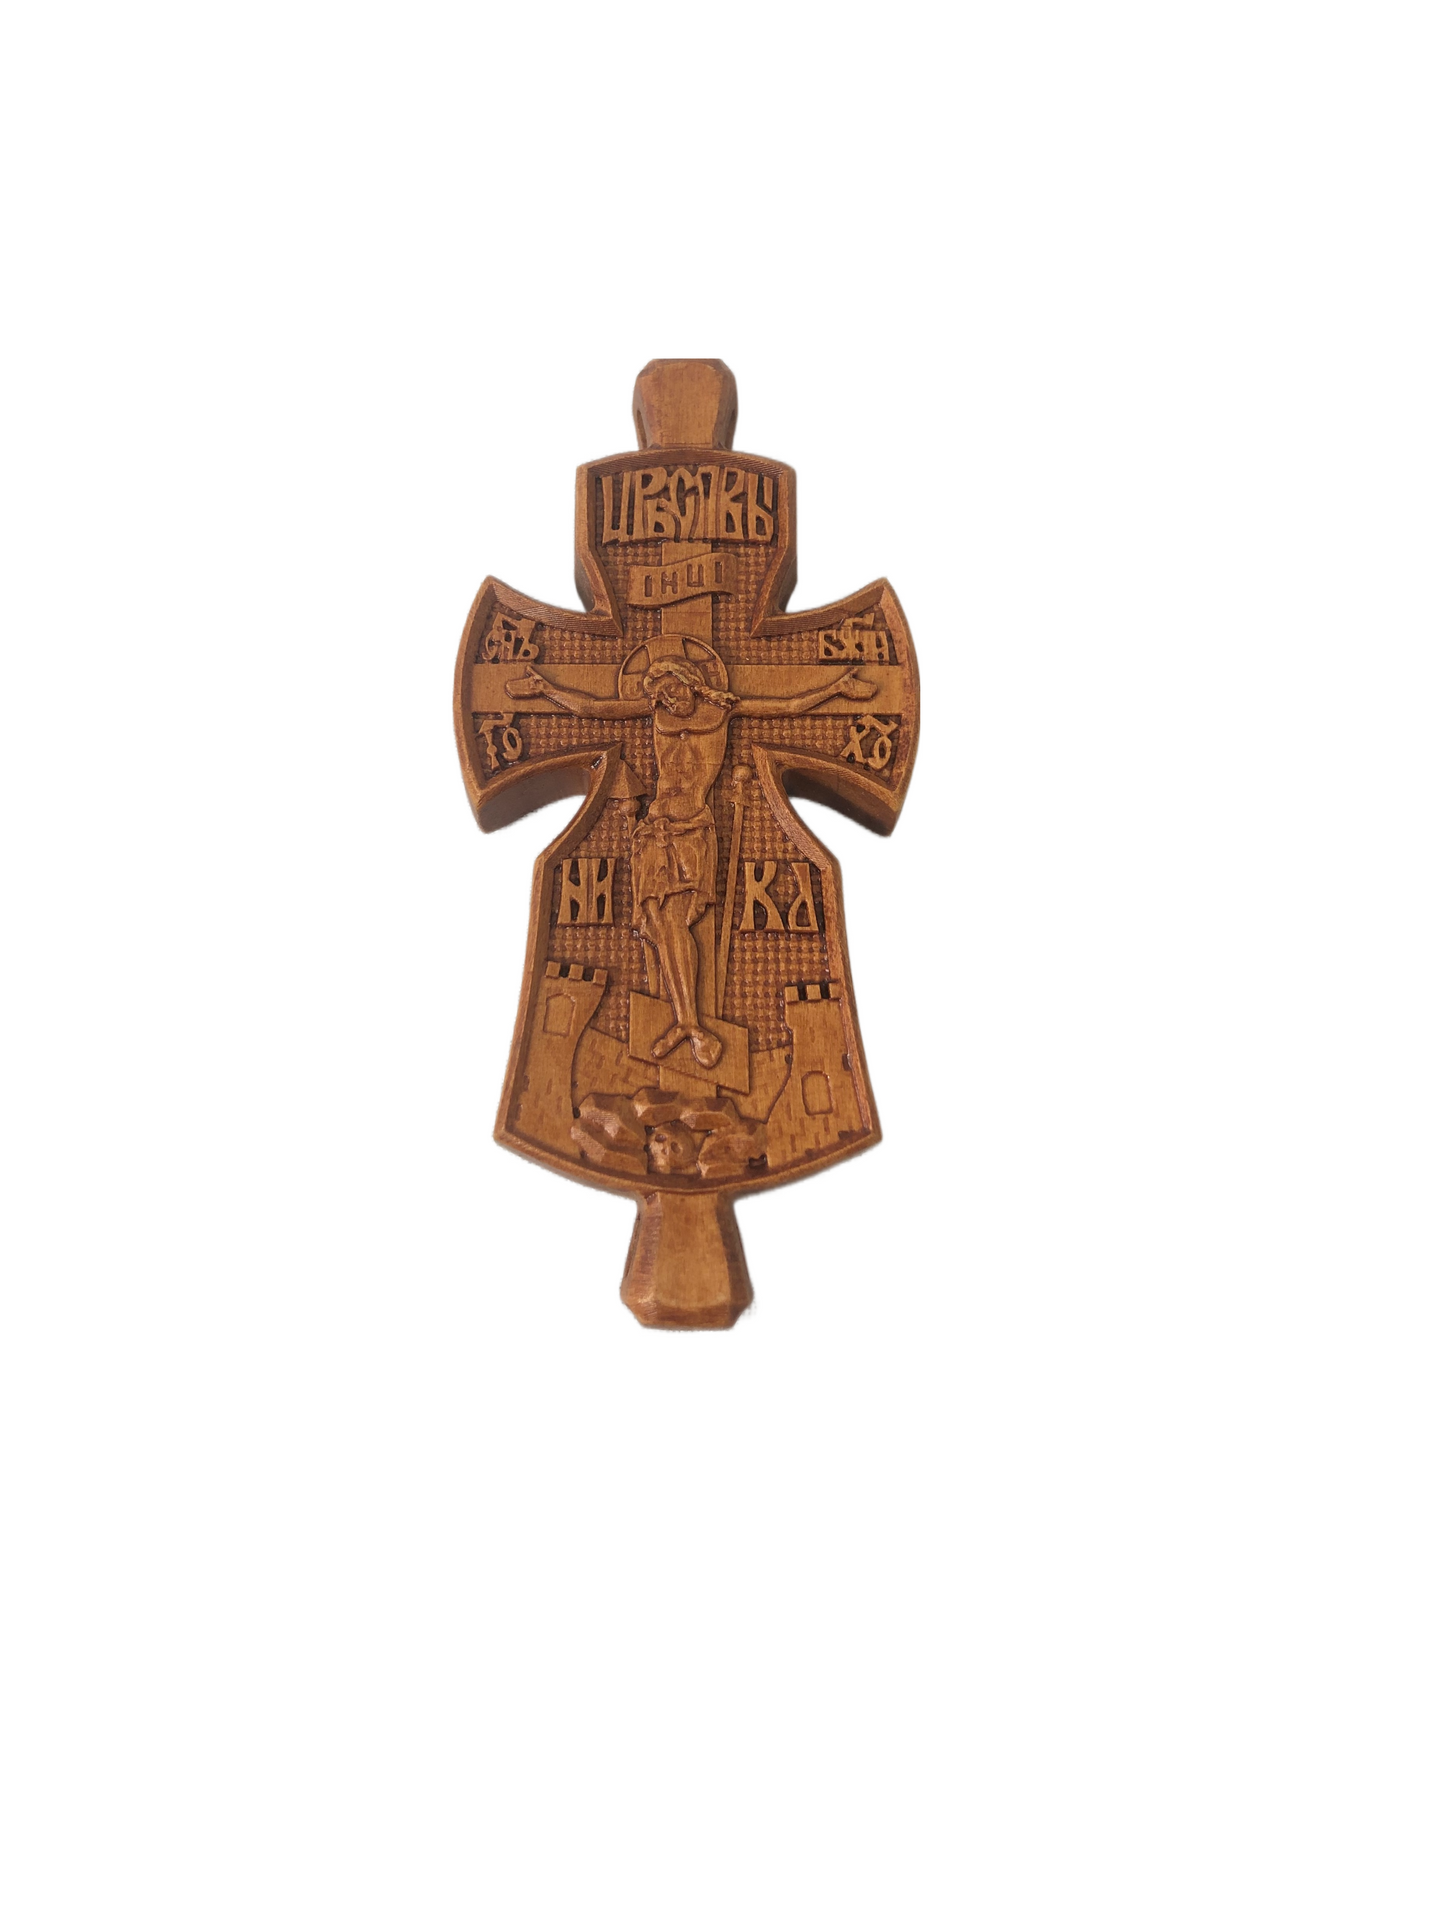 Monastic Wooden Cross